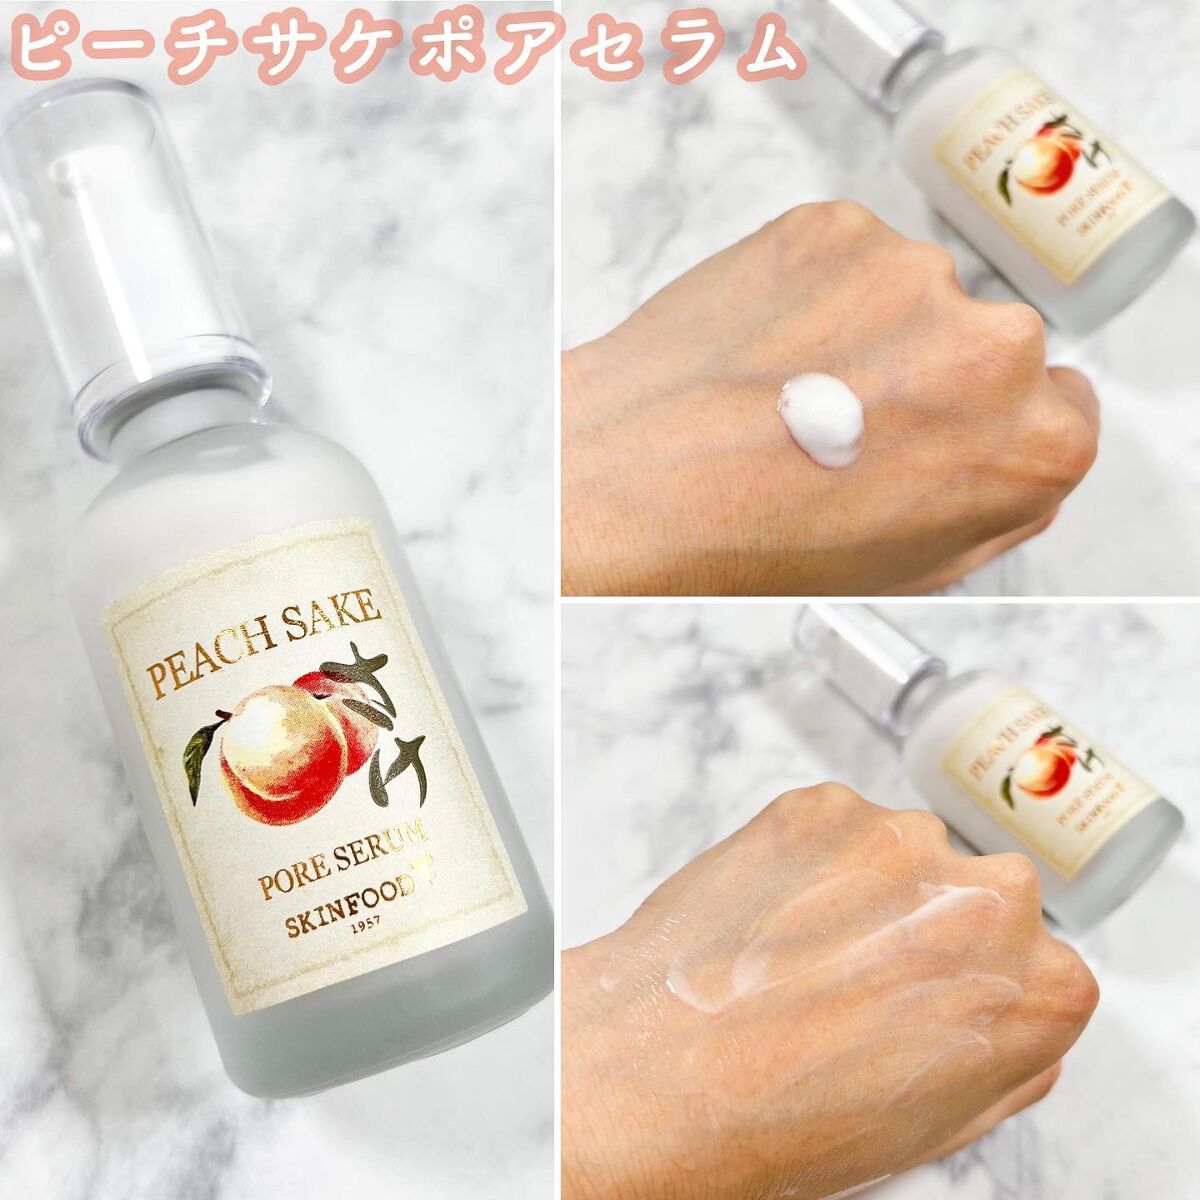 ピーチ酒セラム さけ[Peach sake serum]美容液